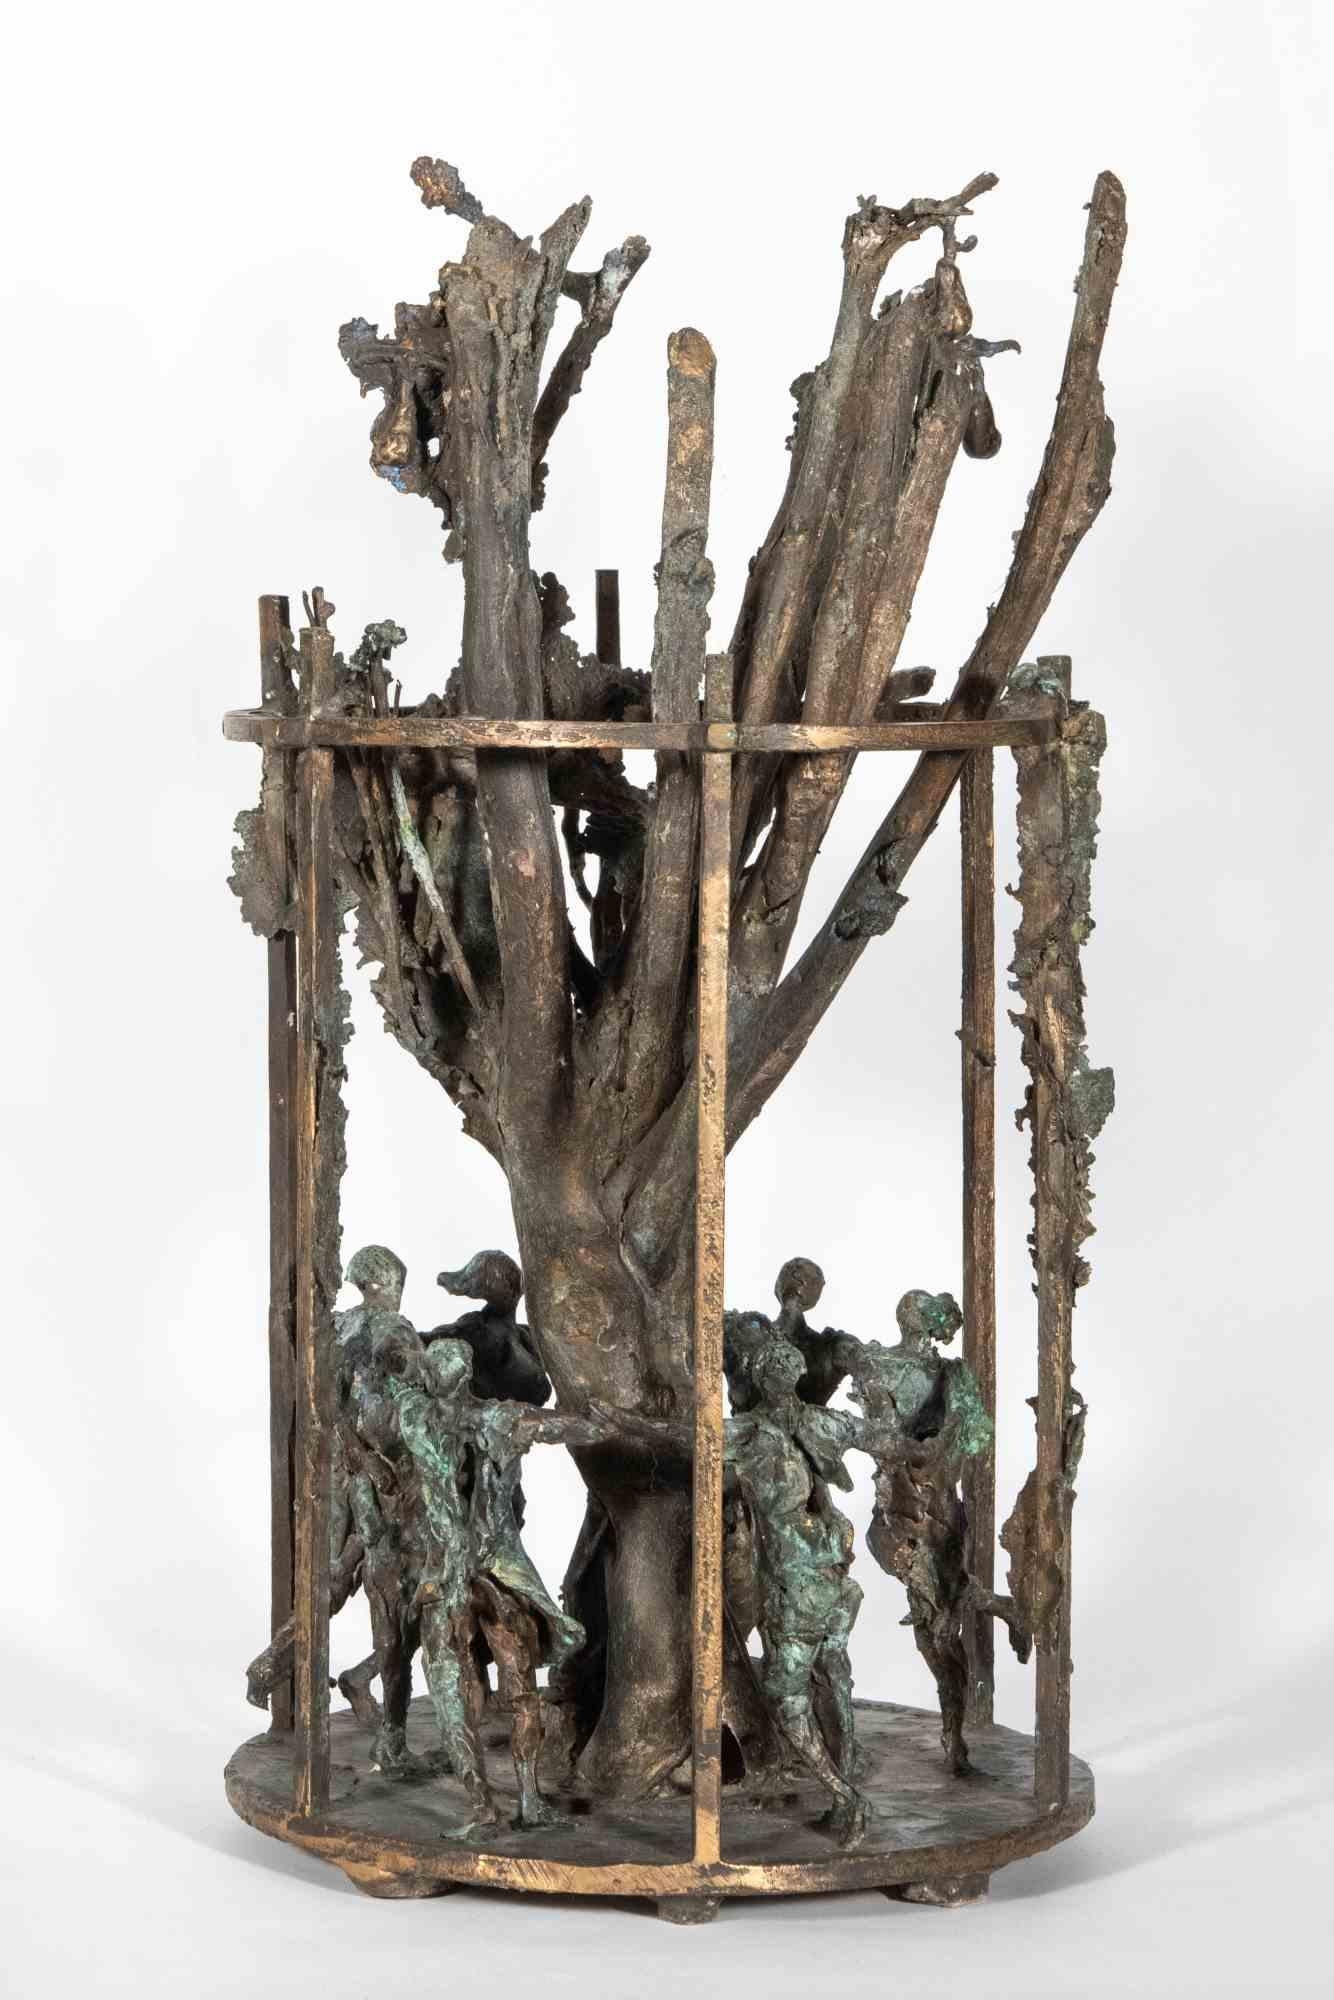 Sculpture introspective, en excellent état, Authentique création en bronze de 1994 proposée par le Sculpteur Lorenzo Servalli, pour raisonner sur la choralité de la Communauté, tendue dans l'effort d'évoluer et de s'améliorer un peu chaque jour,